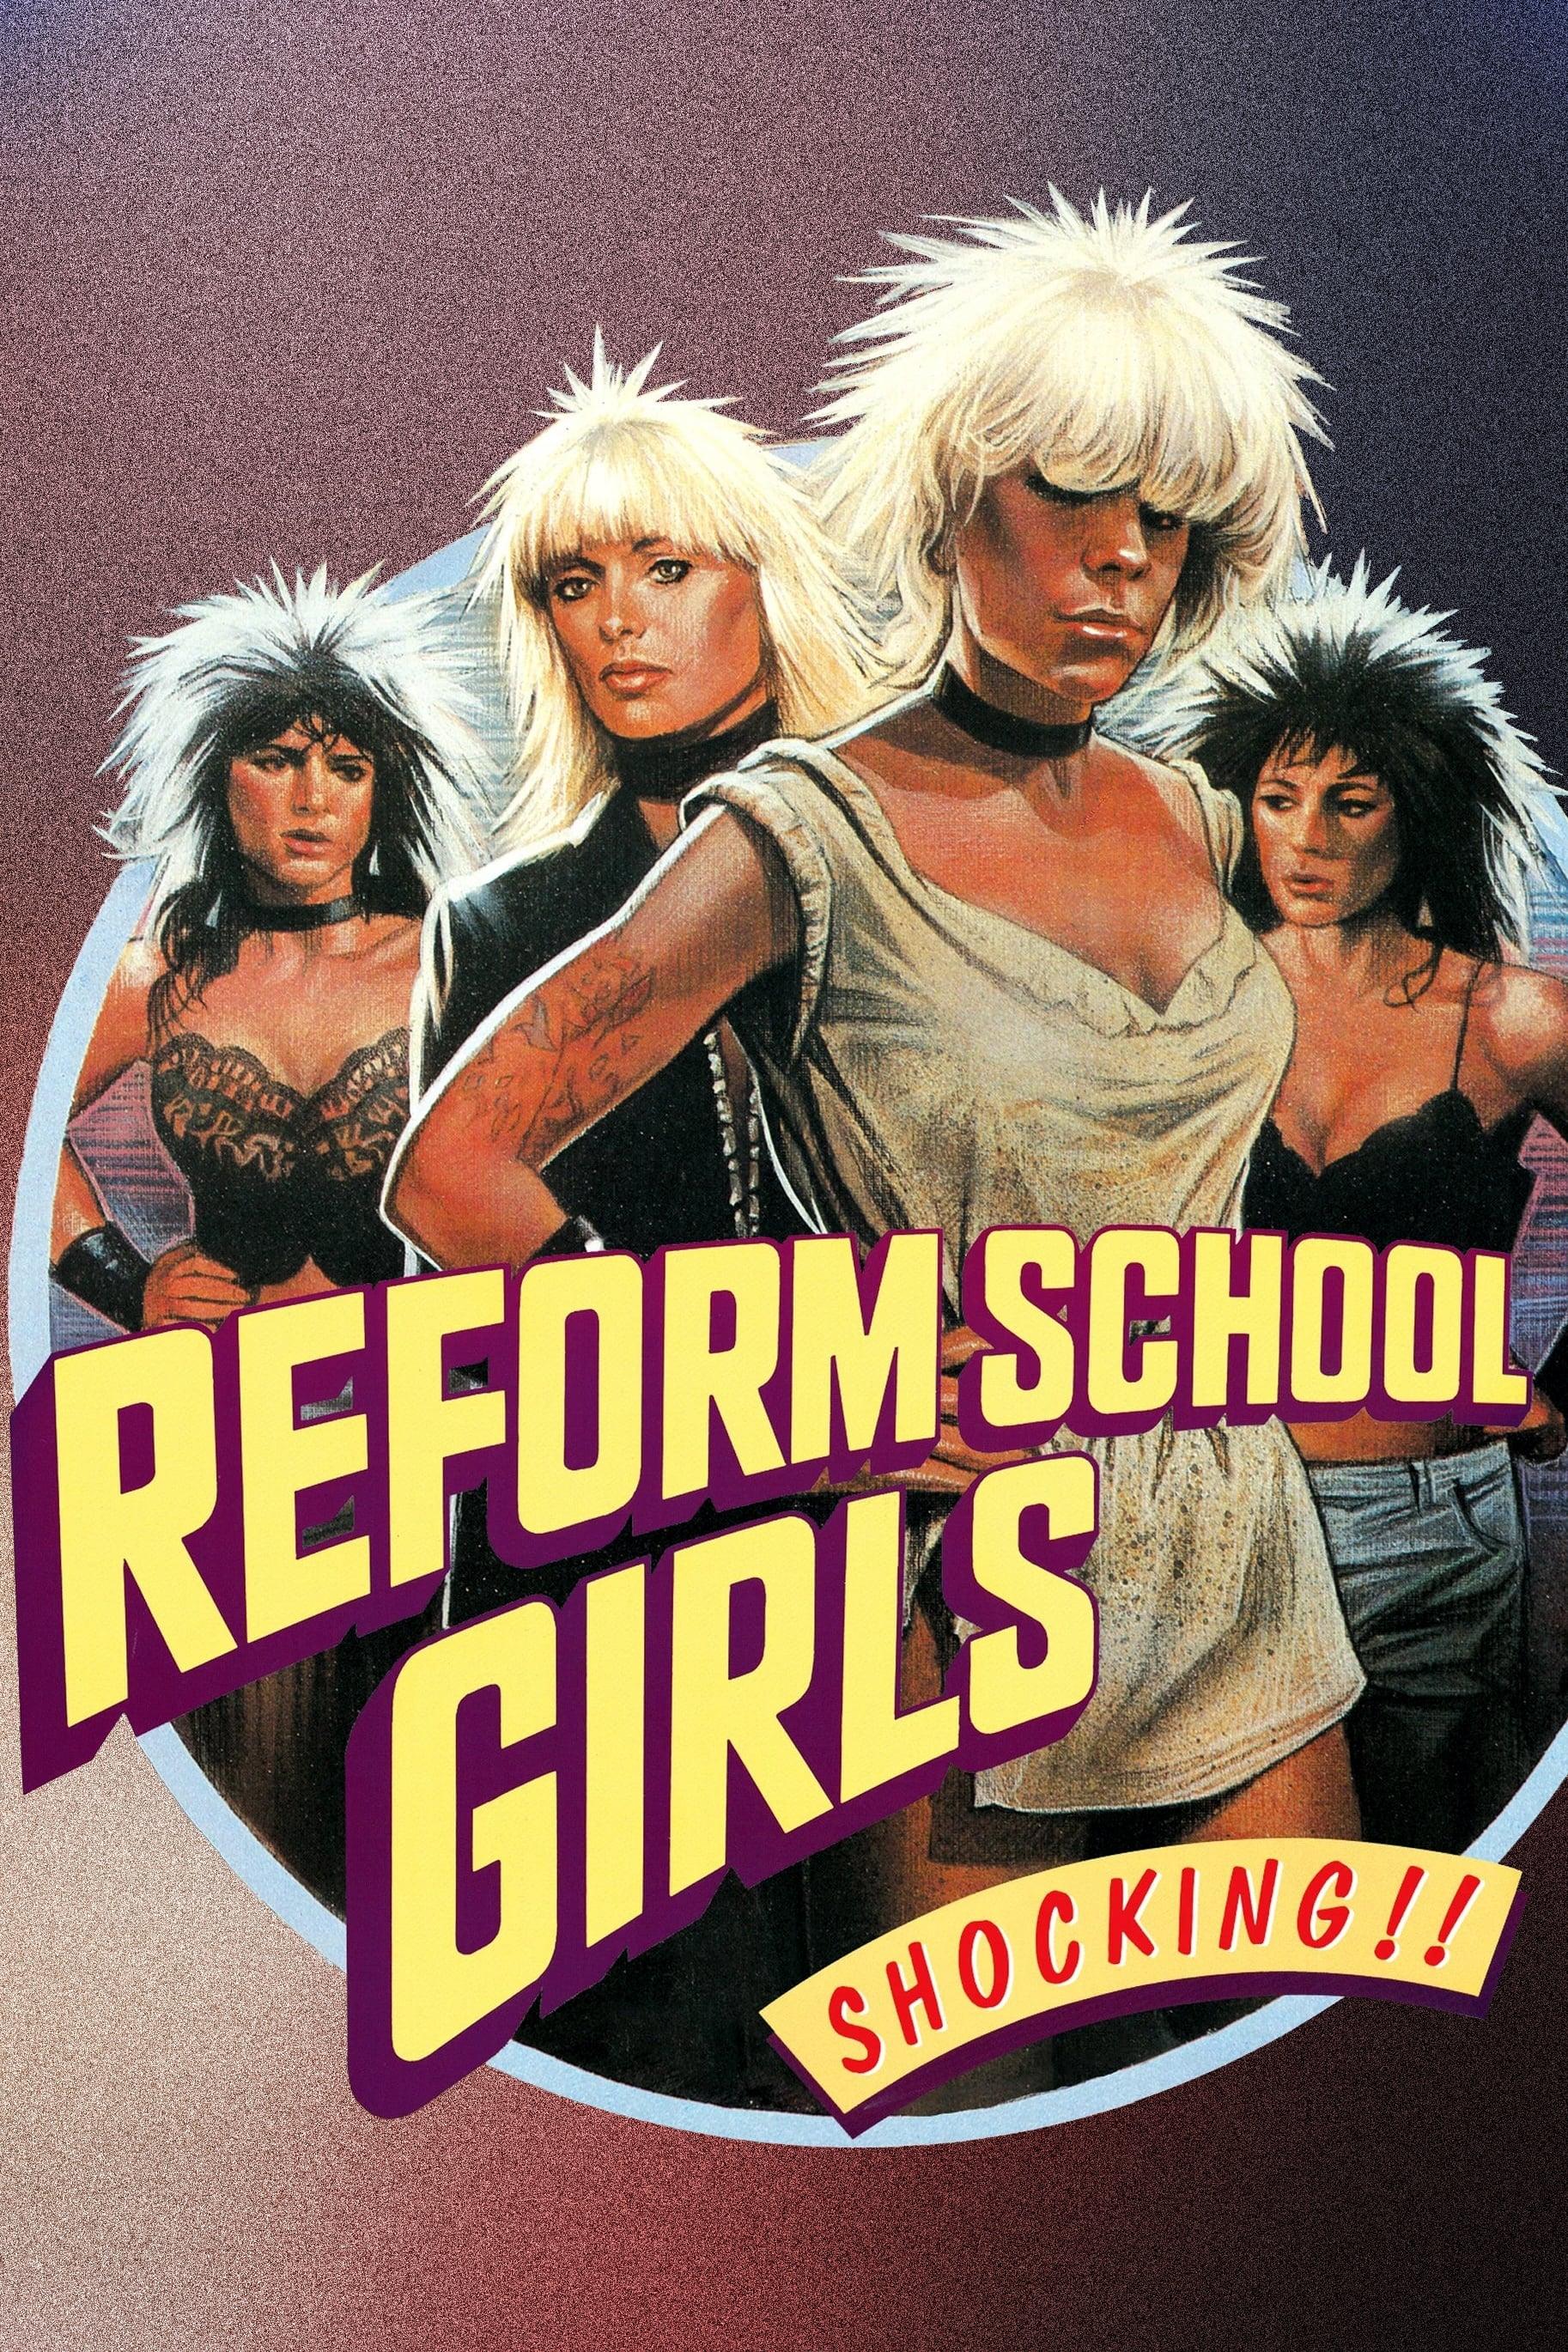 Reform School Girls poster